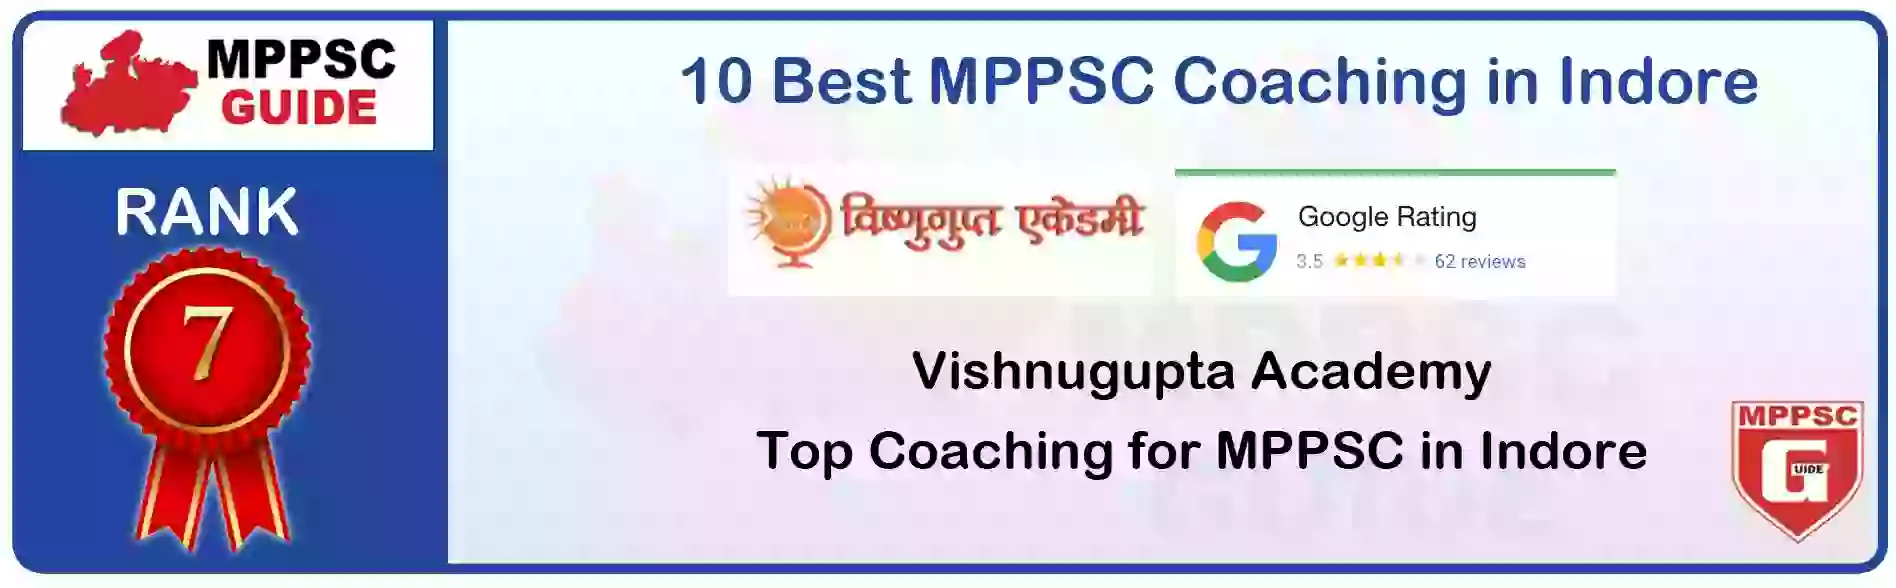 MPPSC Coaching in Rewa, MPPSC Coaching Institute In Rewa, Best MPPSC Coaching in Rewa, Top 10 MPPSC Coaching In Rewa, best mppsc coaching institute in rewa, MPPSC Coaching Classes In Rewa, MPPSC Online Coaching In Rewa, mppsc coaching in Rewa bhanwarkua